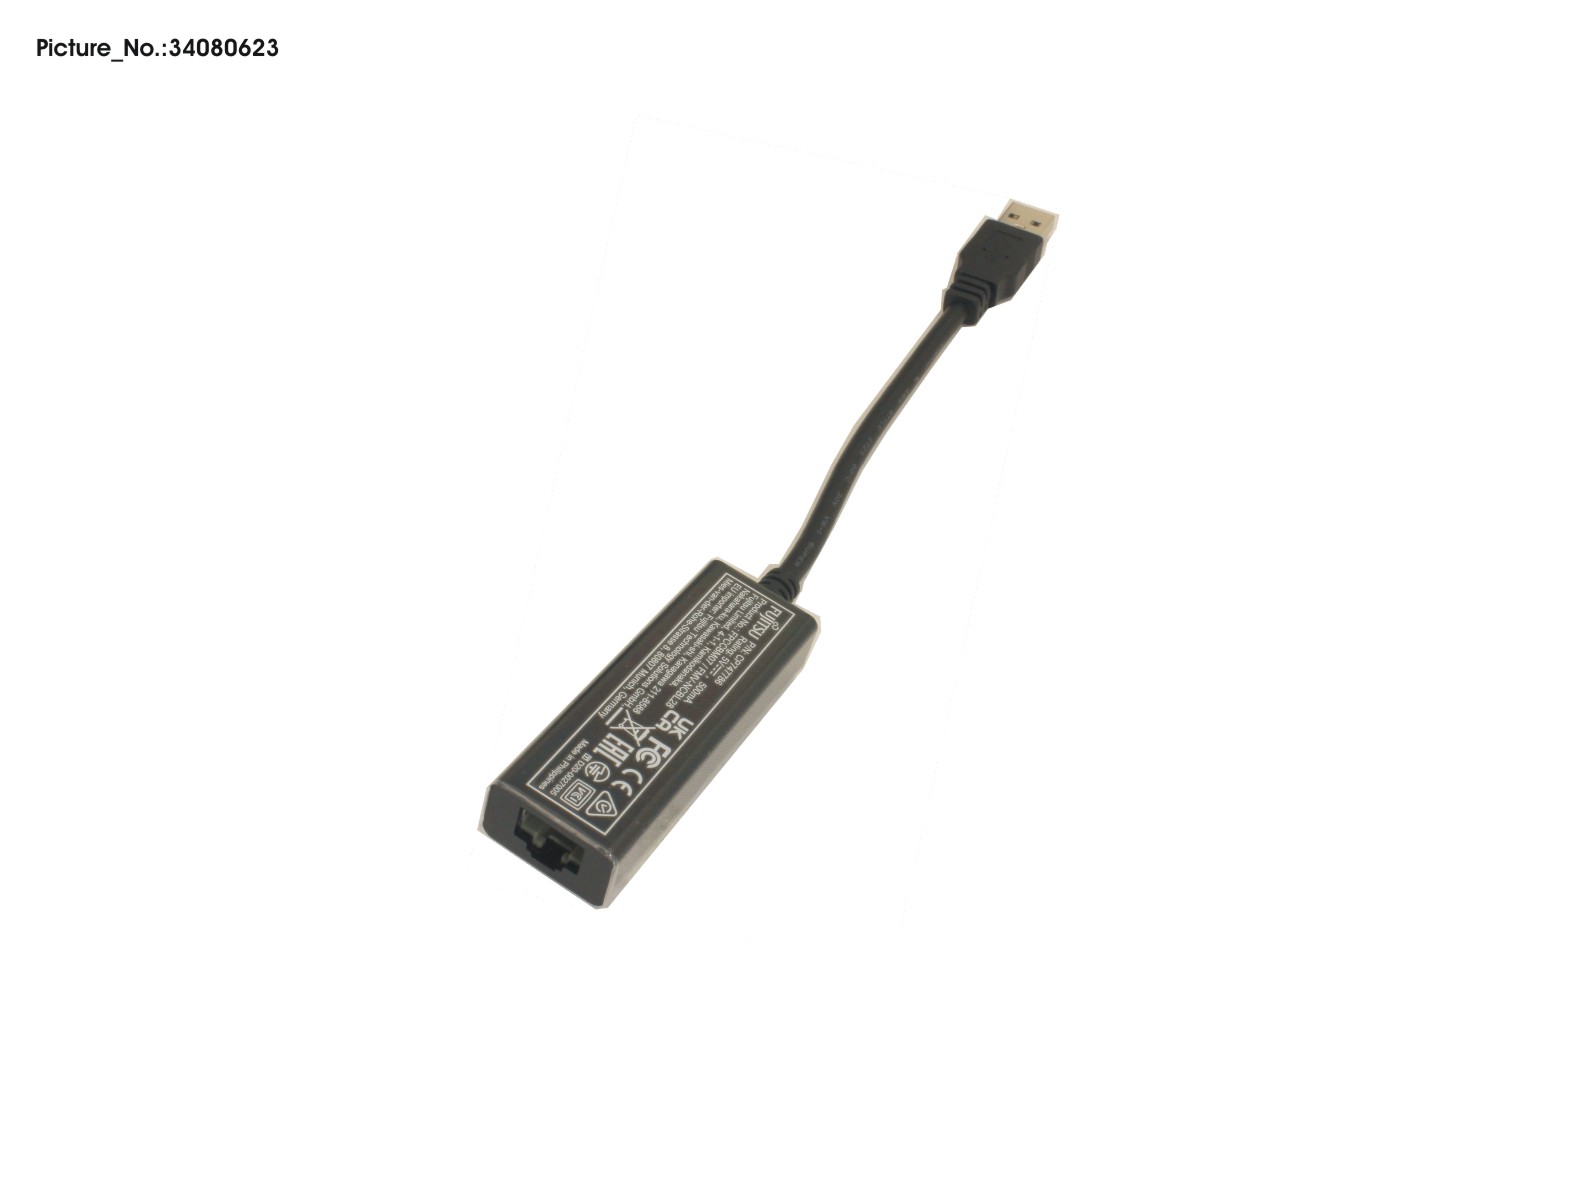 CABLE, LAN ADAPTER (USB TO LAN) UKCA